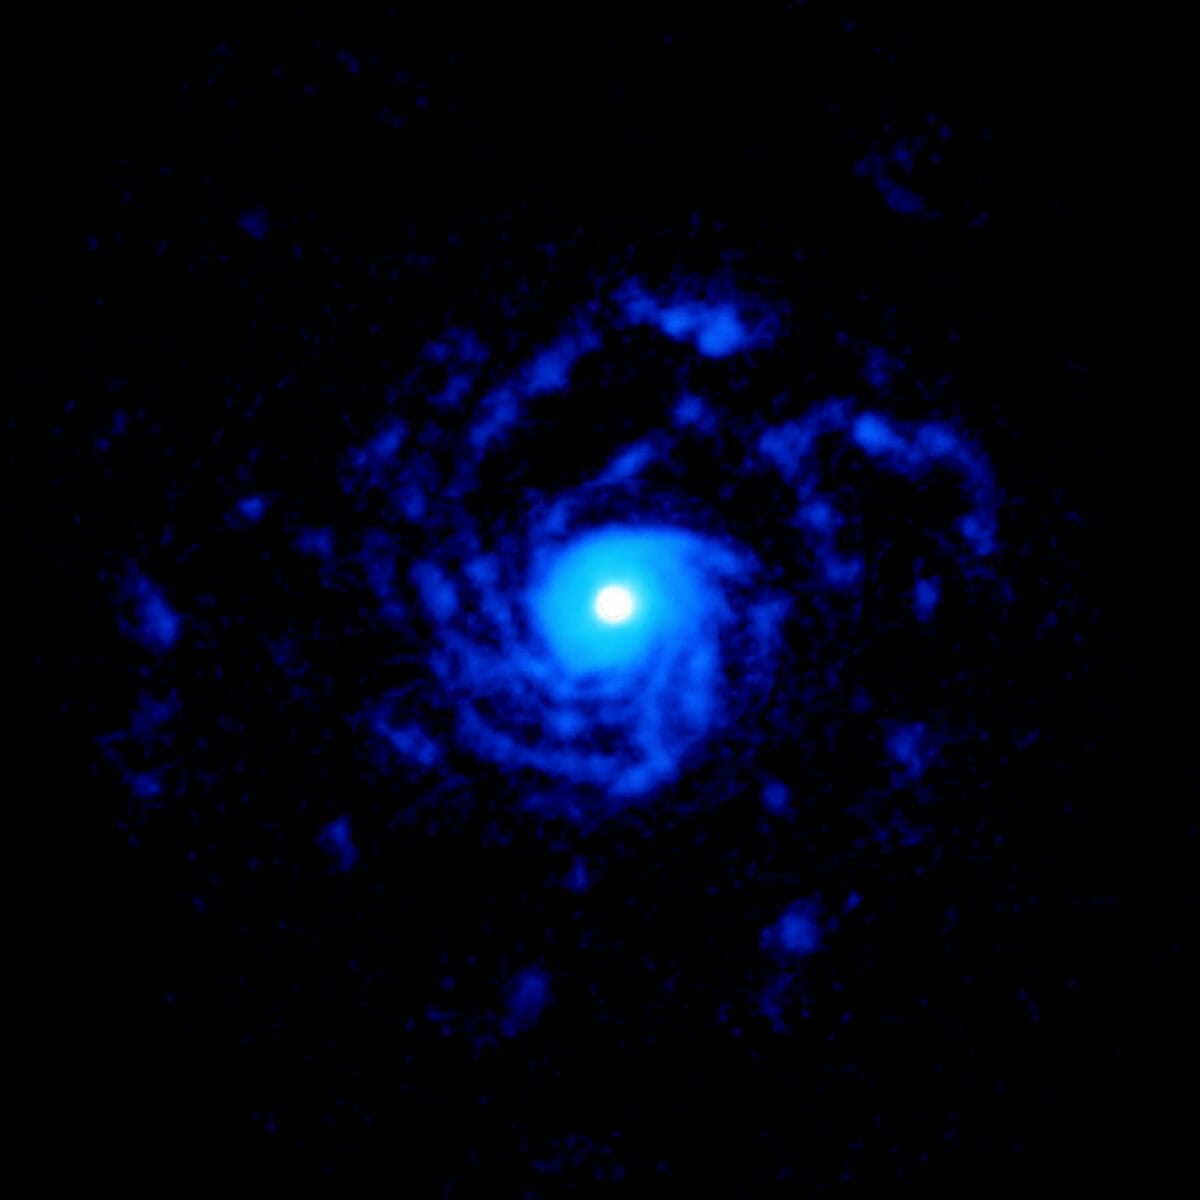 アルマ望遠鏡が観測した「おおかみ座RU星」